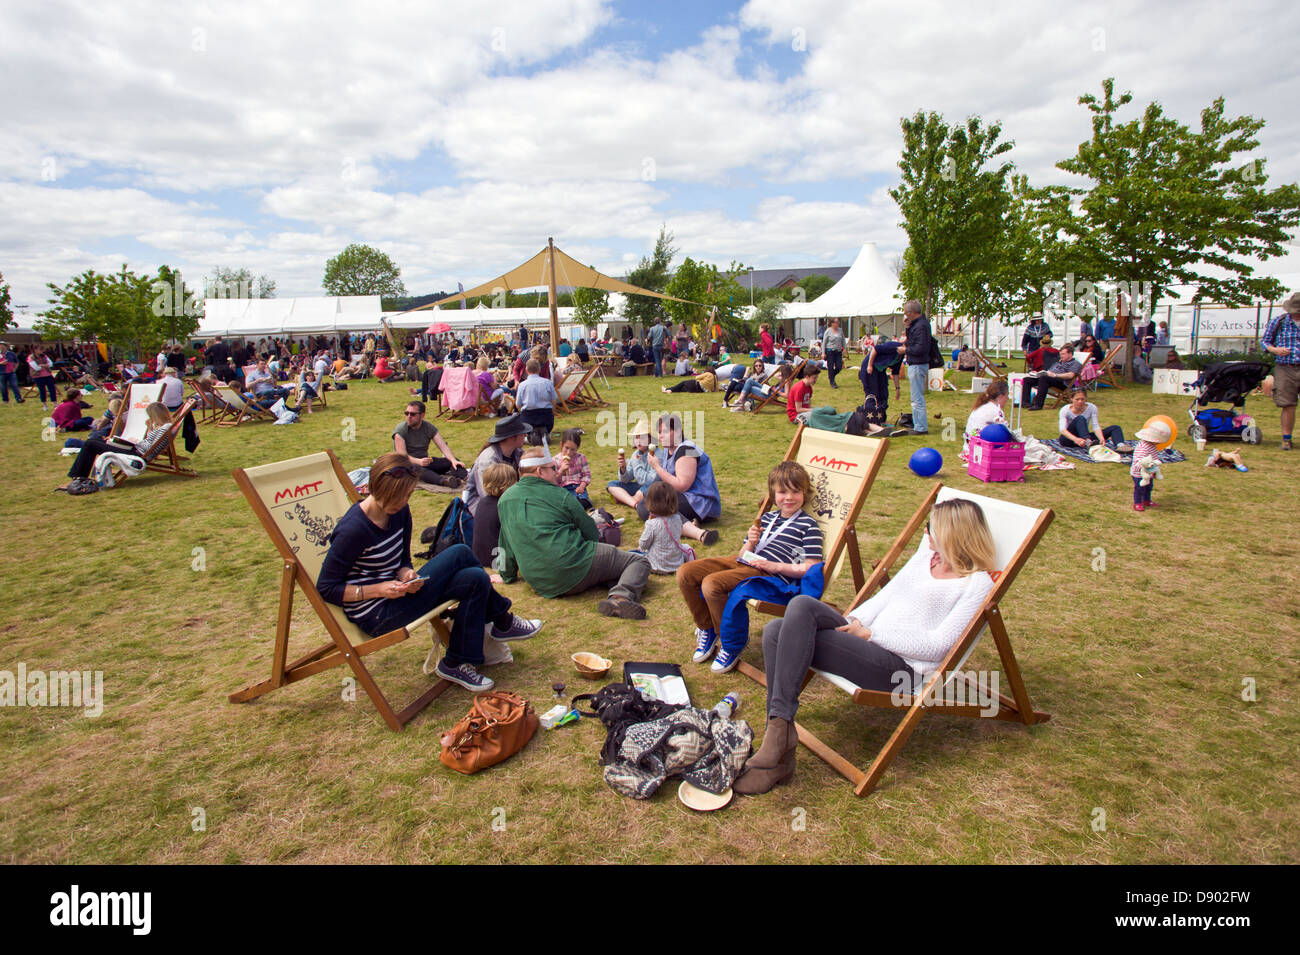 Des groupes de visiteurs de vous détendre sur la pelouse à l'Hay Festival 2013 Hay-on-Wye Powys Pays de Galles UK Banque D'Images